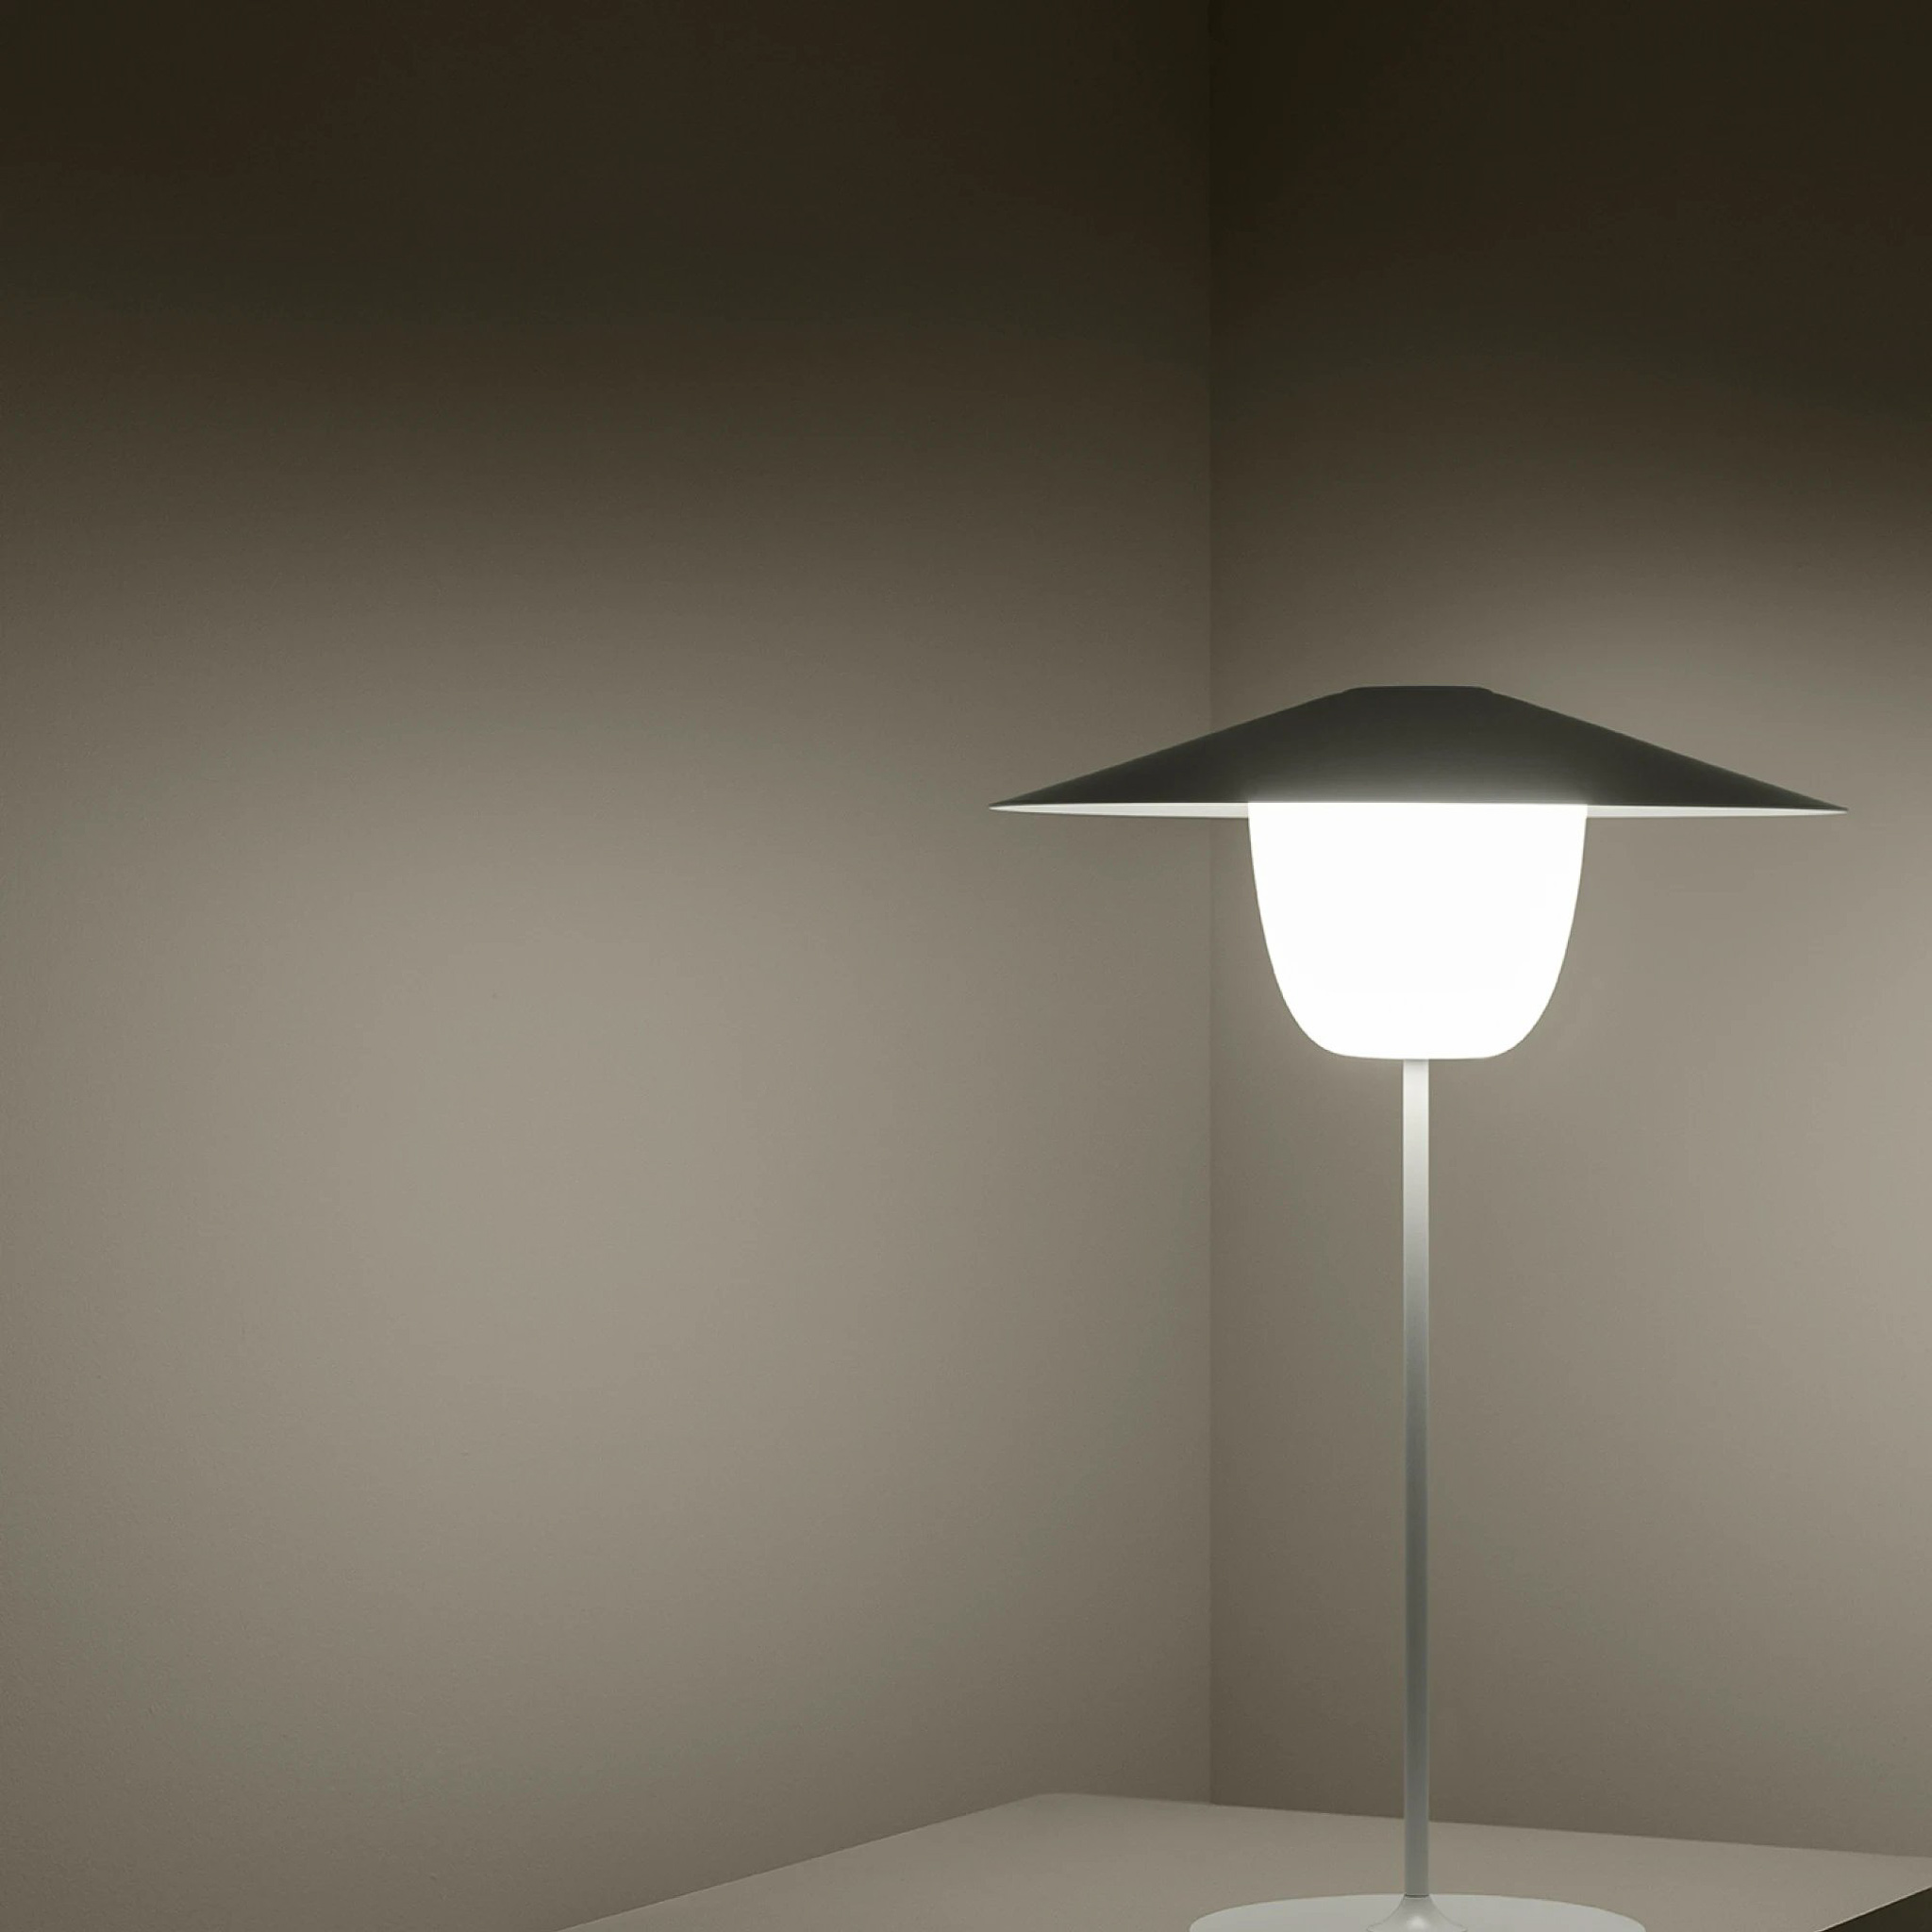 BLOMUS // ANI LAMP - MOBILE LED-TISCHLEUCHTE | WHITE